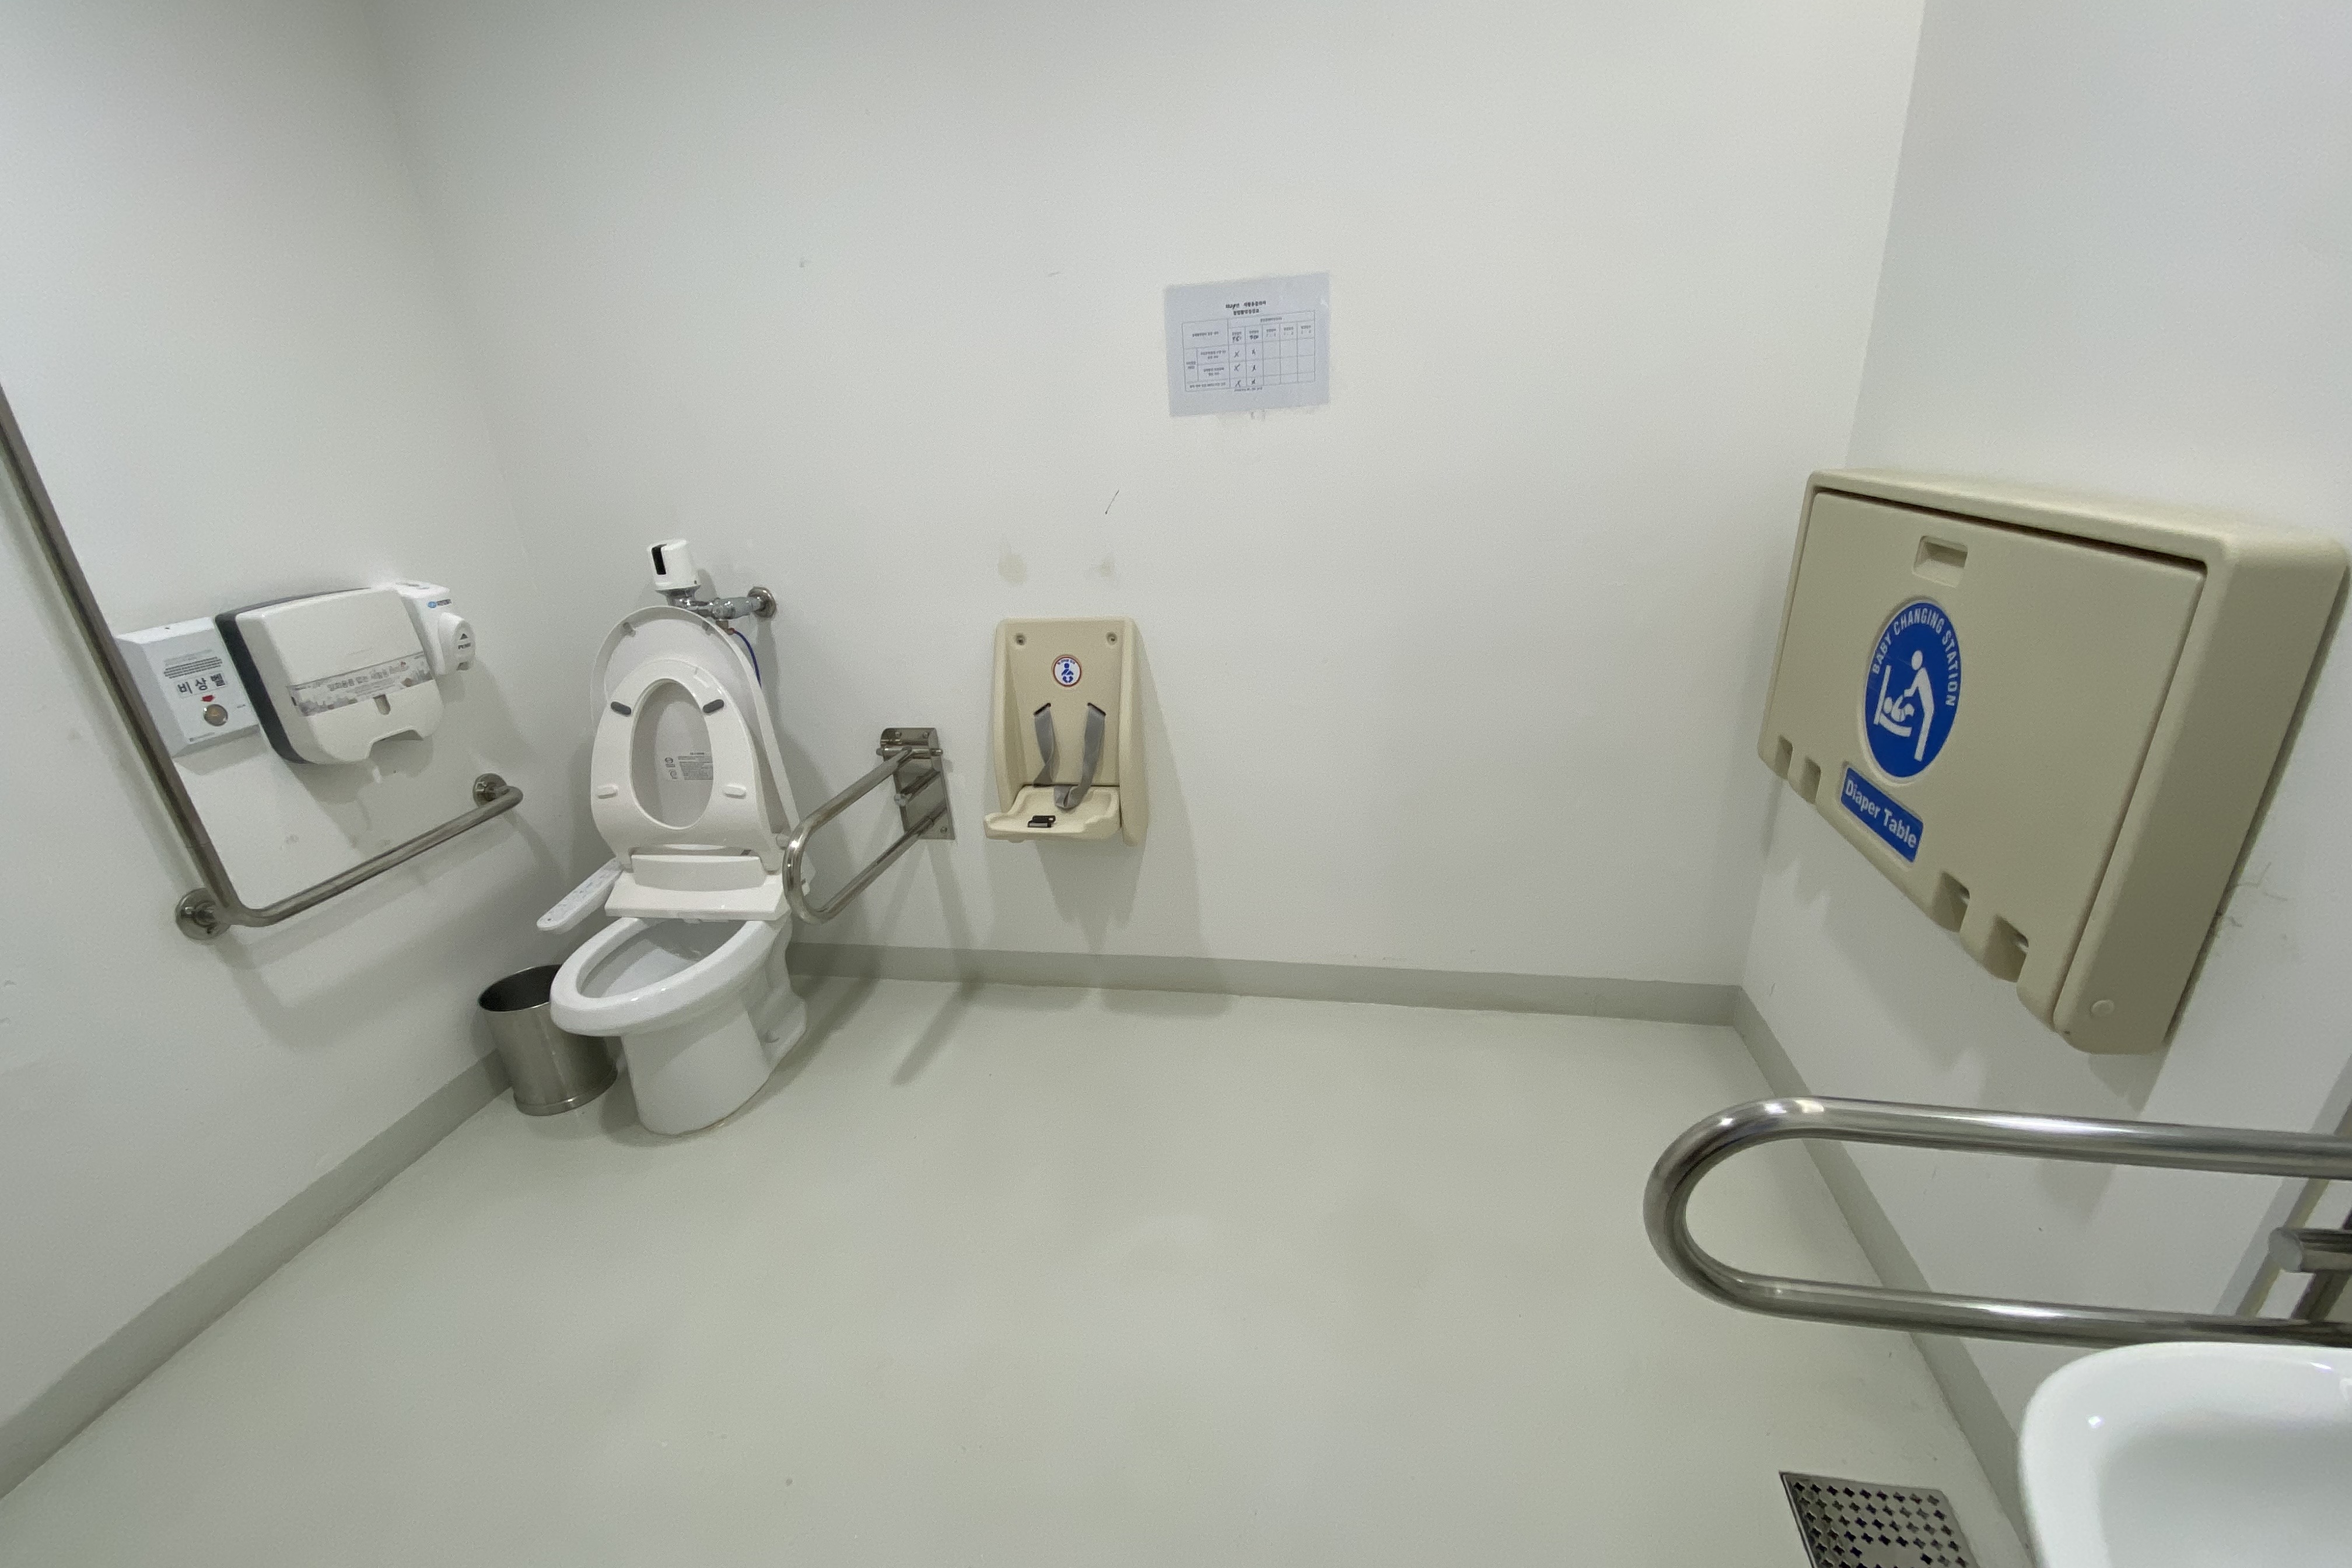 장애인 화장실0 : 공간이 넓어 편리하게 사용할 수 있는 서울새활용플라자 장애인화장실 내부 전경